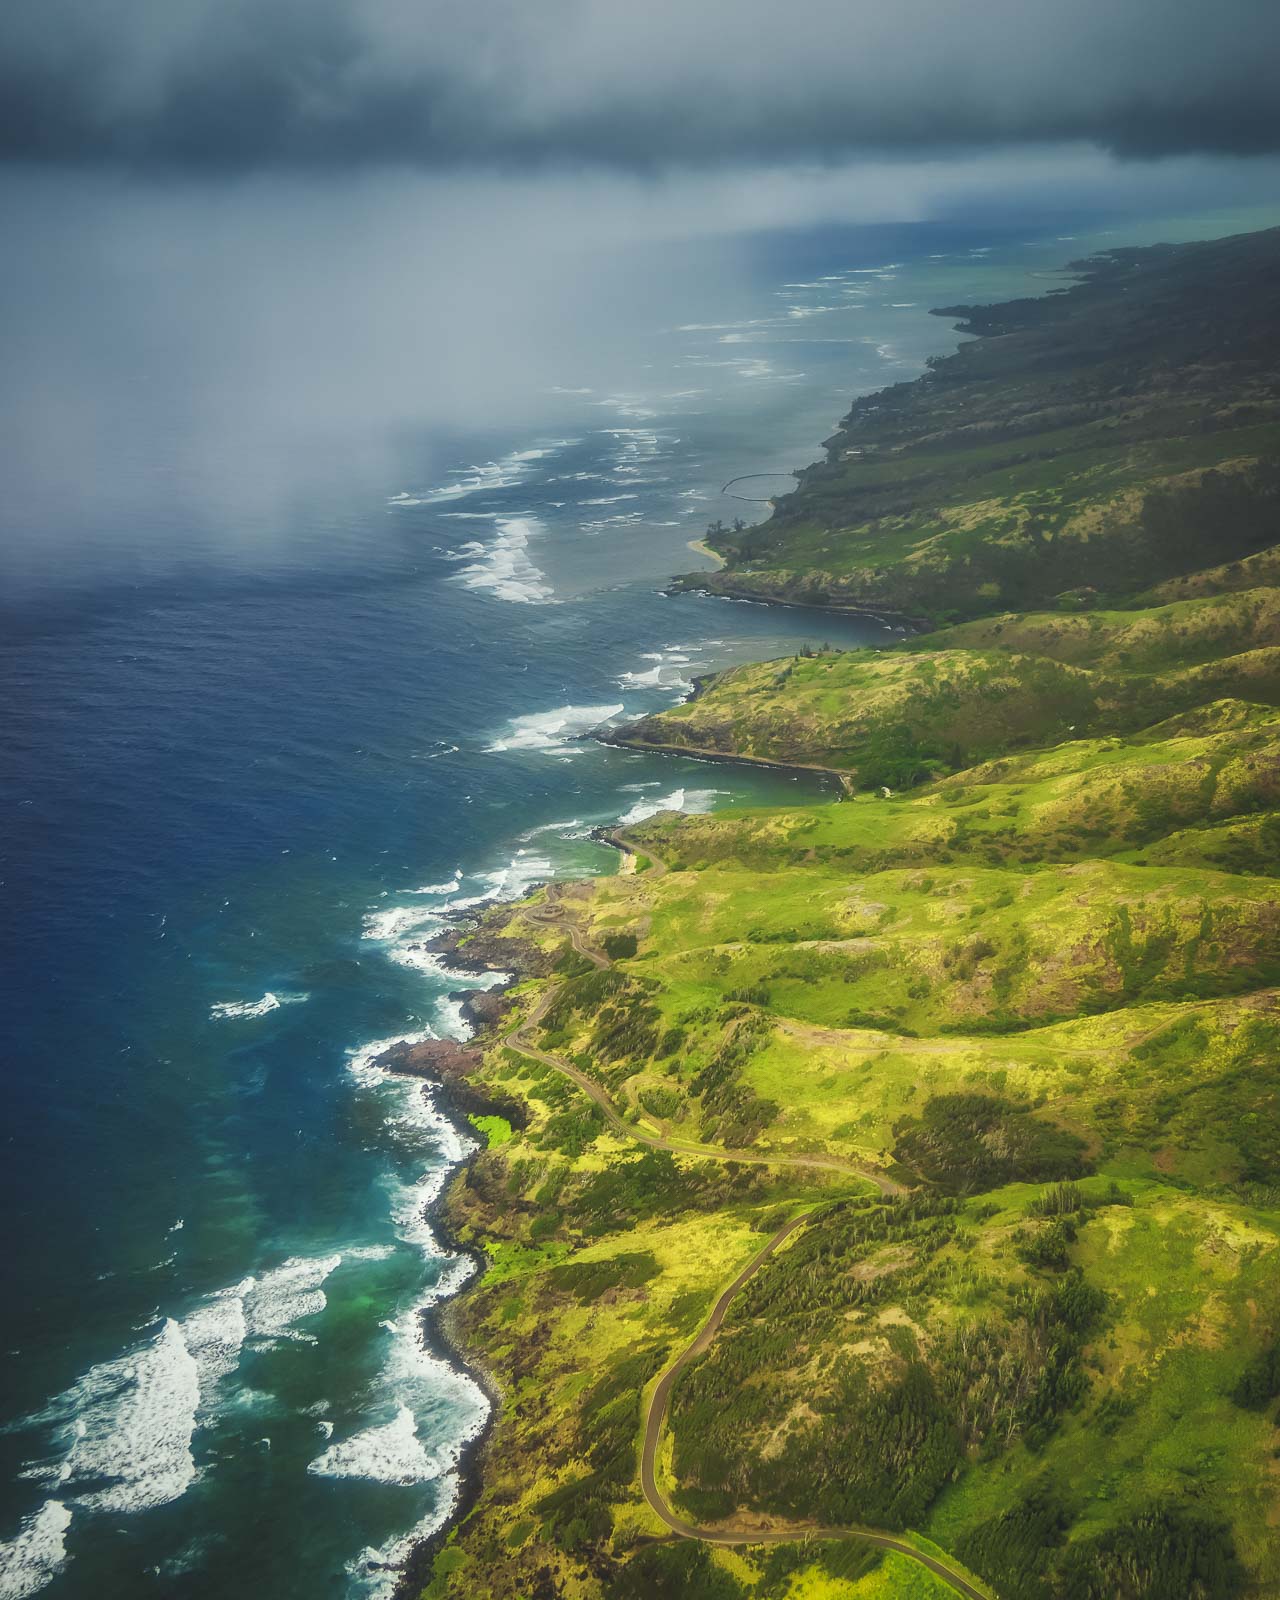 Na Pali Coast view from a helicopter Kauai